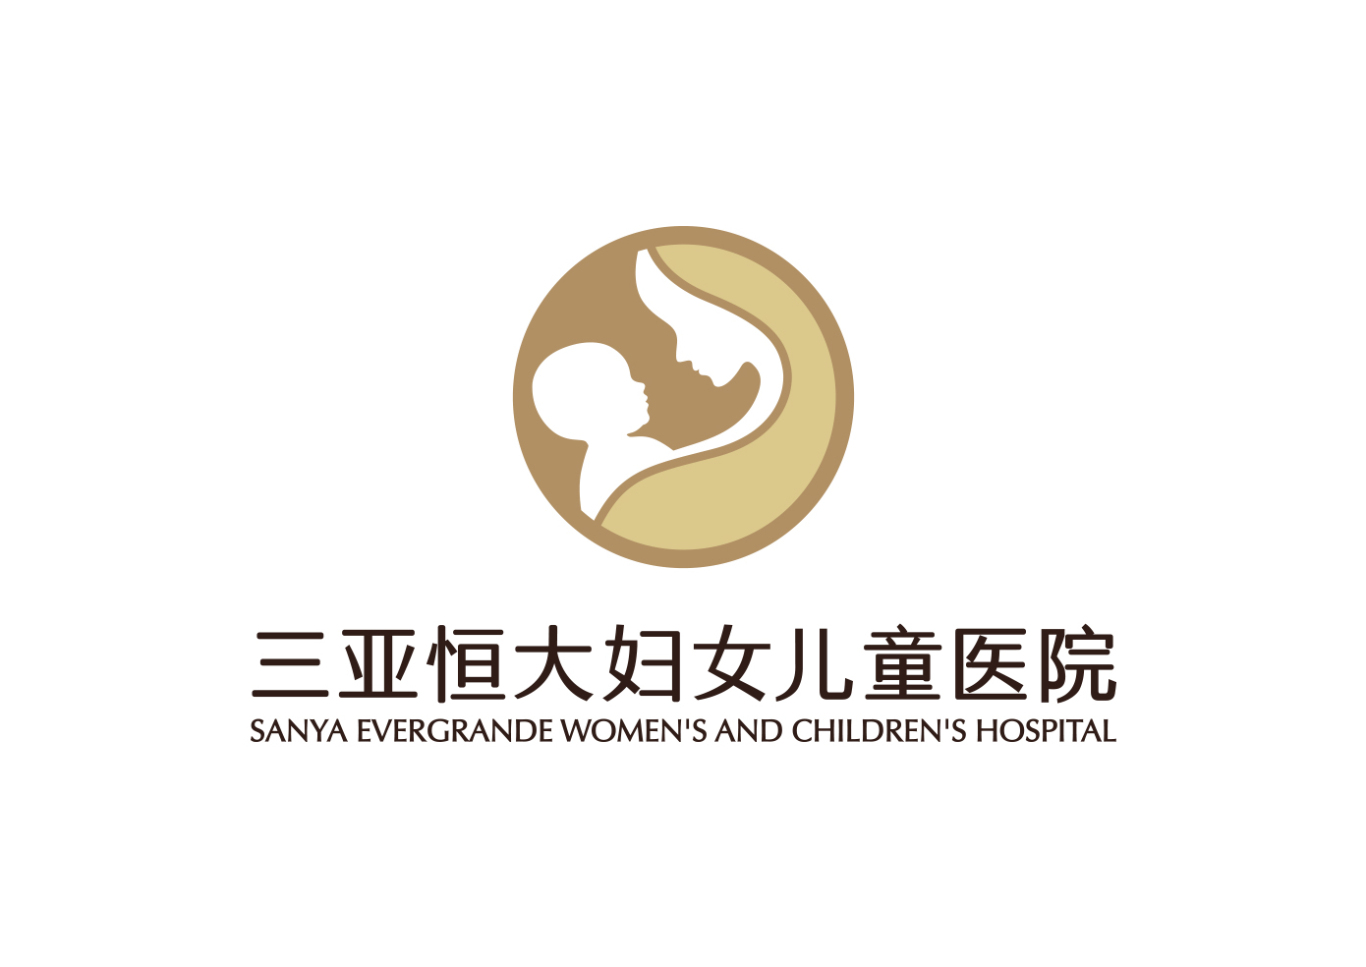 海南省妇幼保健院vi、导视标识设计案例图0